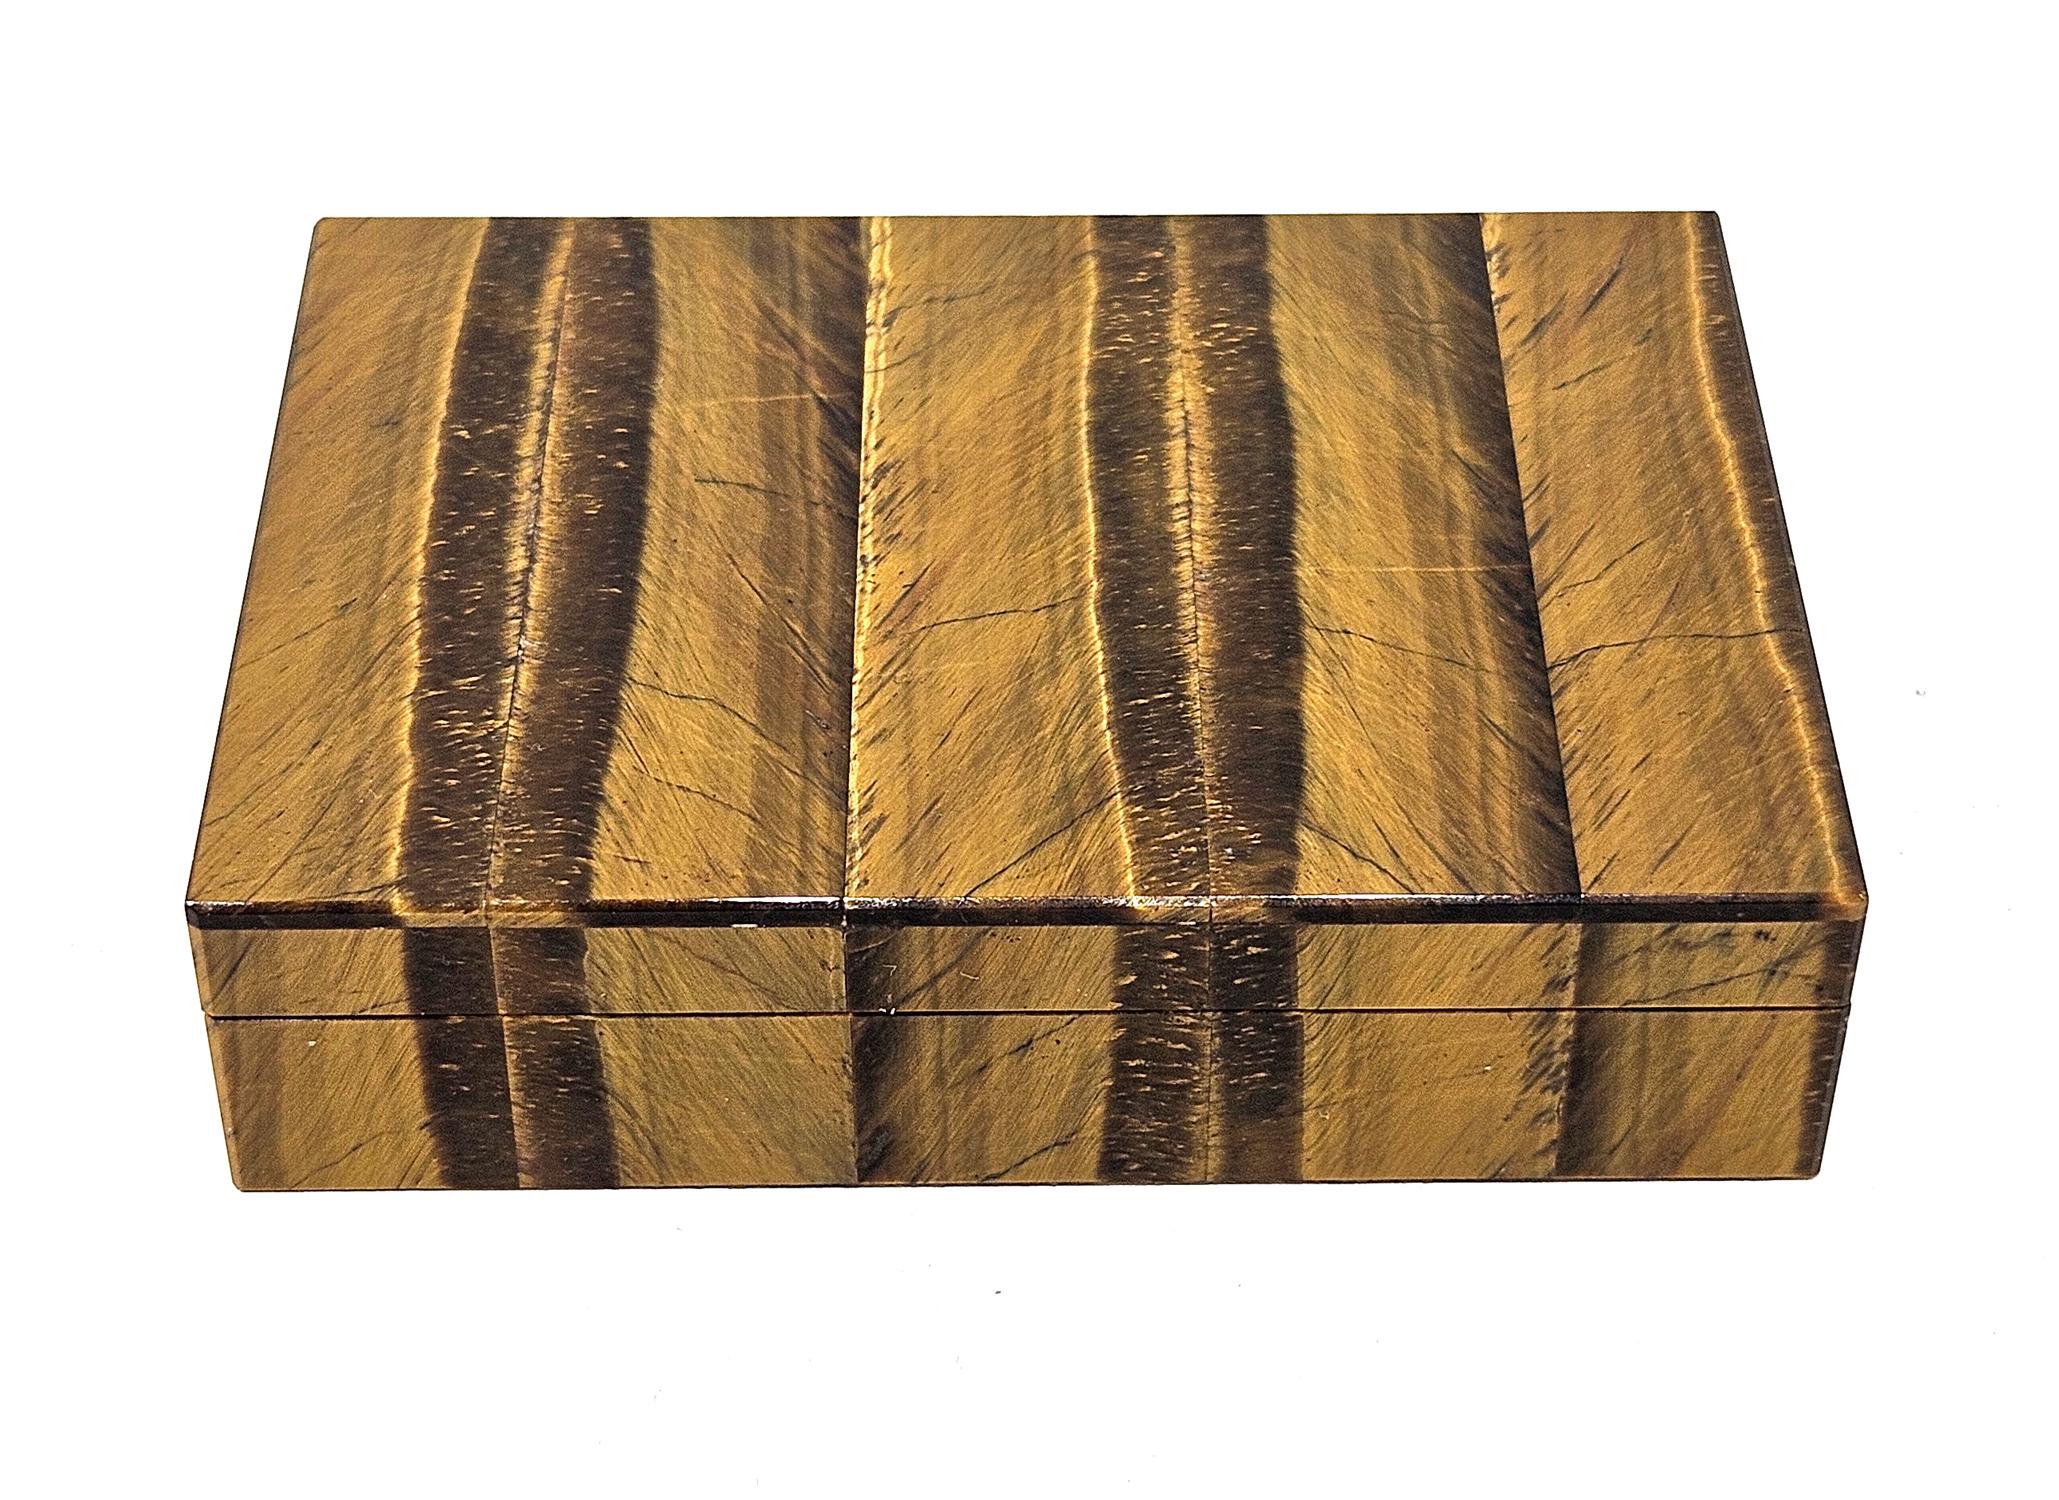 Une exquise boîte italienne vintage en intarsia œil de tigre estampillée par Gori & Zucchi (devenu UnoAErre), vendue au détail à Ravenne vers les années 1960. 
Le coffret est plaqué de quartz œil de tigre finement rubané, avec un magnifique motif et